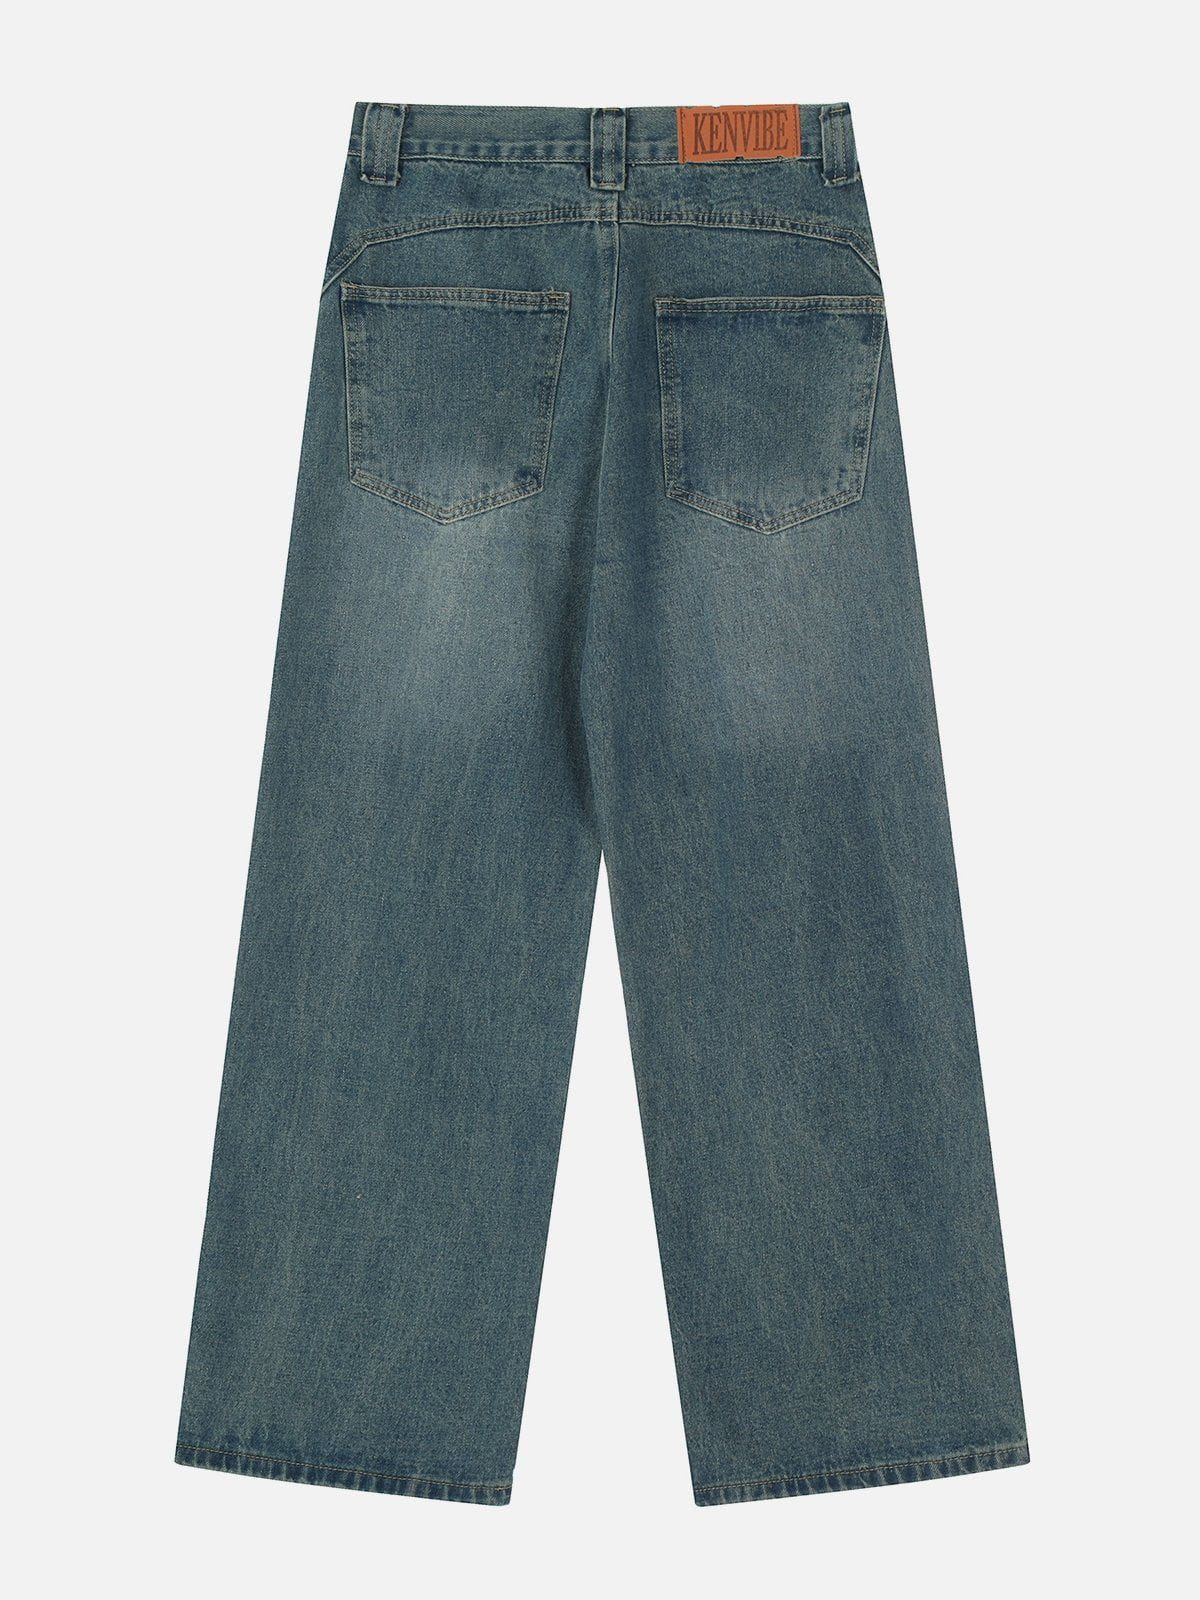 Eprezzy® - Vintage Folded Jeans Streetwear Fashion - eprezzy.com